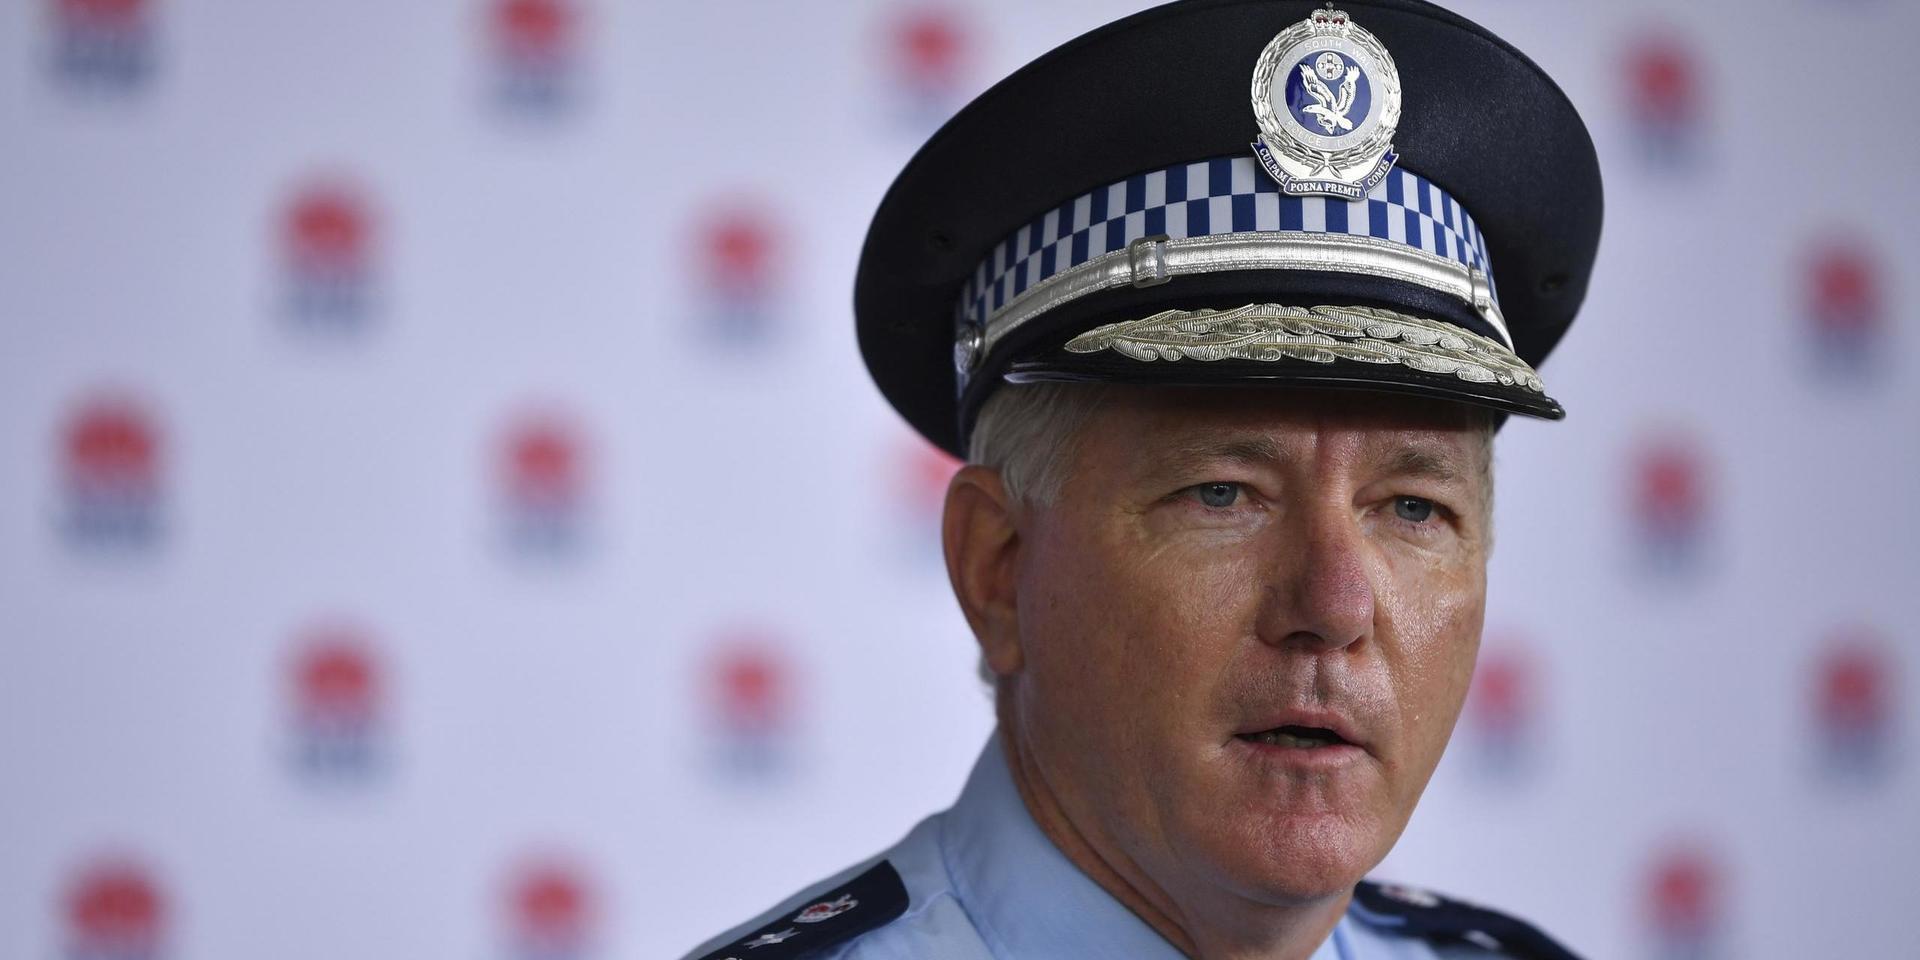 New South Wales poliskommissionär Mick Fuller var kritisk till de två männen som bröt mot restriktionerna och gick vilse under söndagen. 